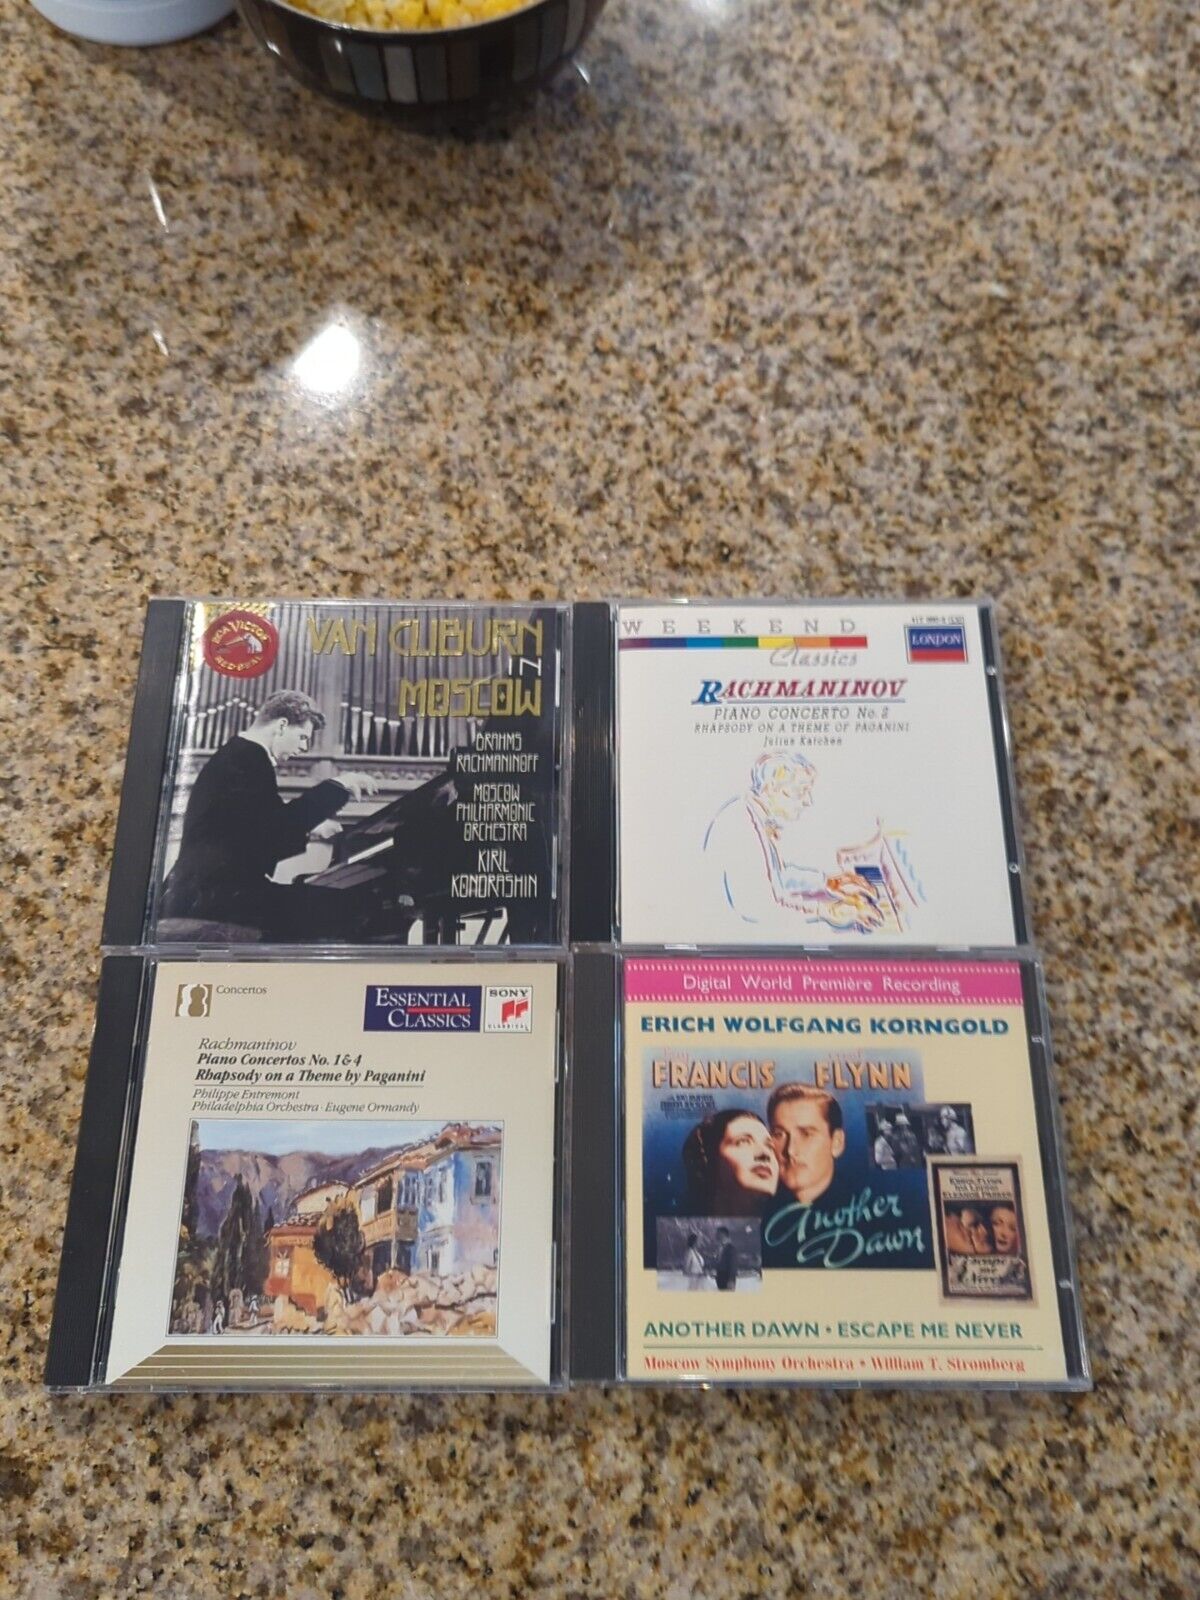 4 Classic Opera CDs Lot 31 Bachmaninov Paganini Rachmaniov Francis Flynn Cliburn